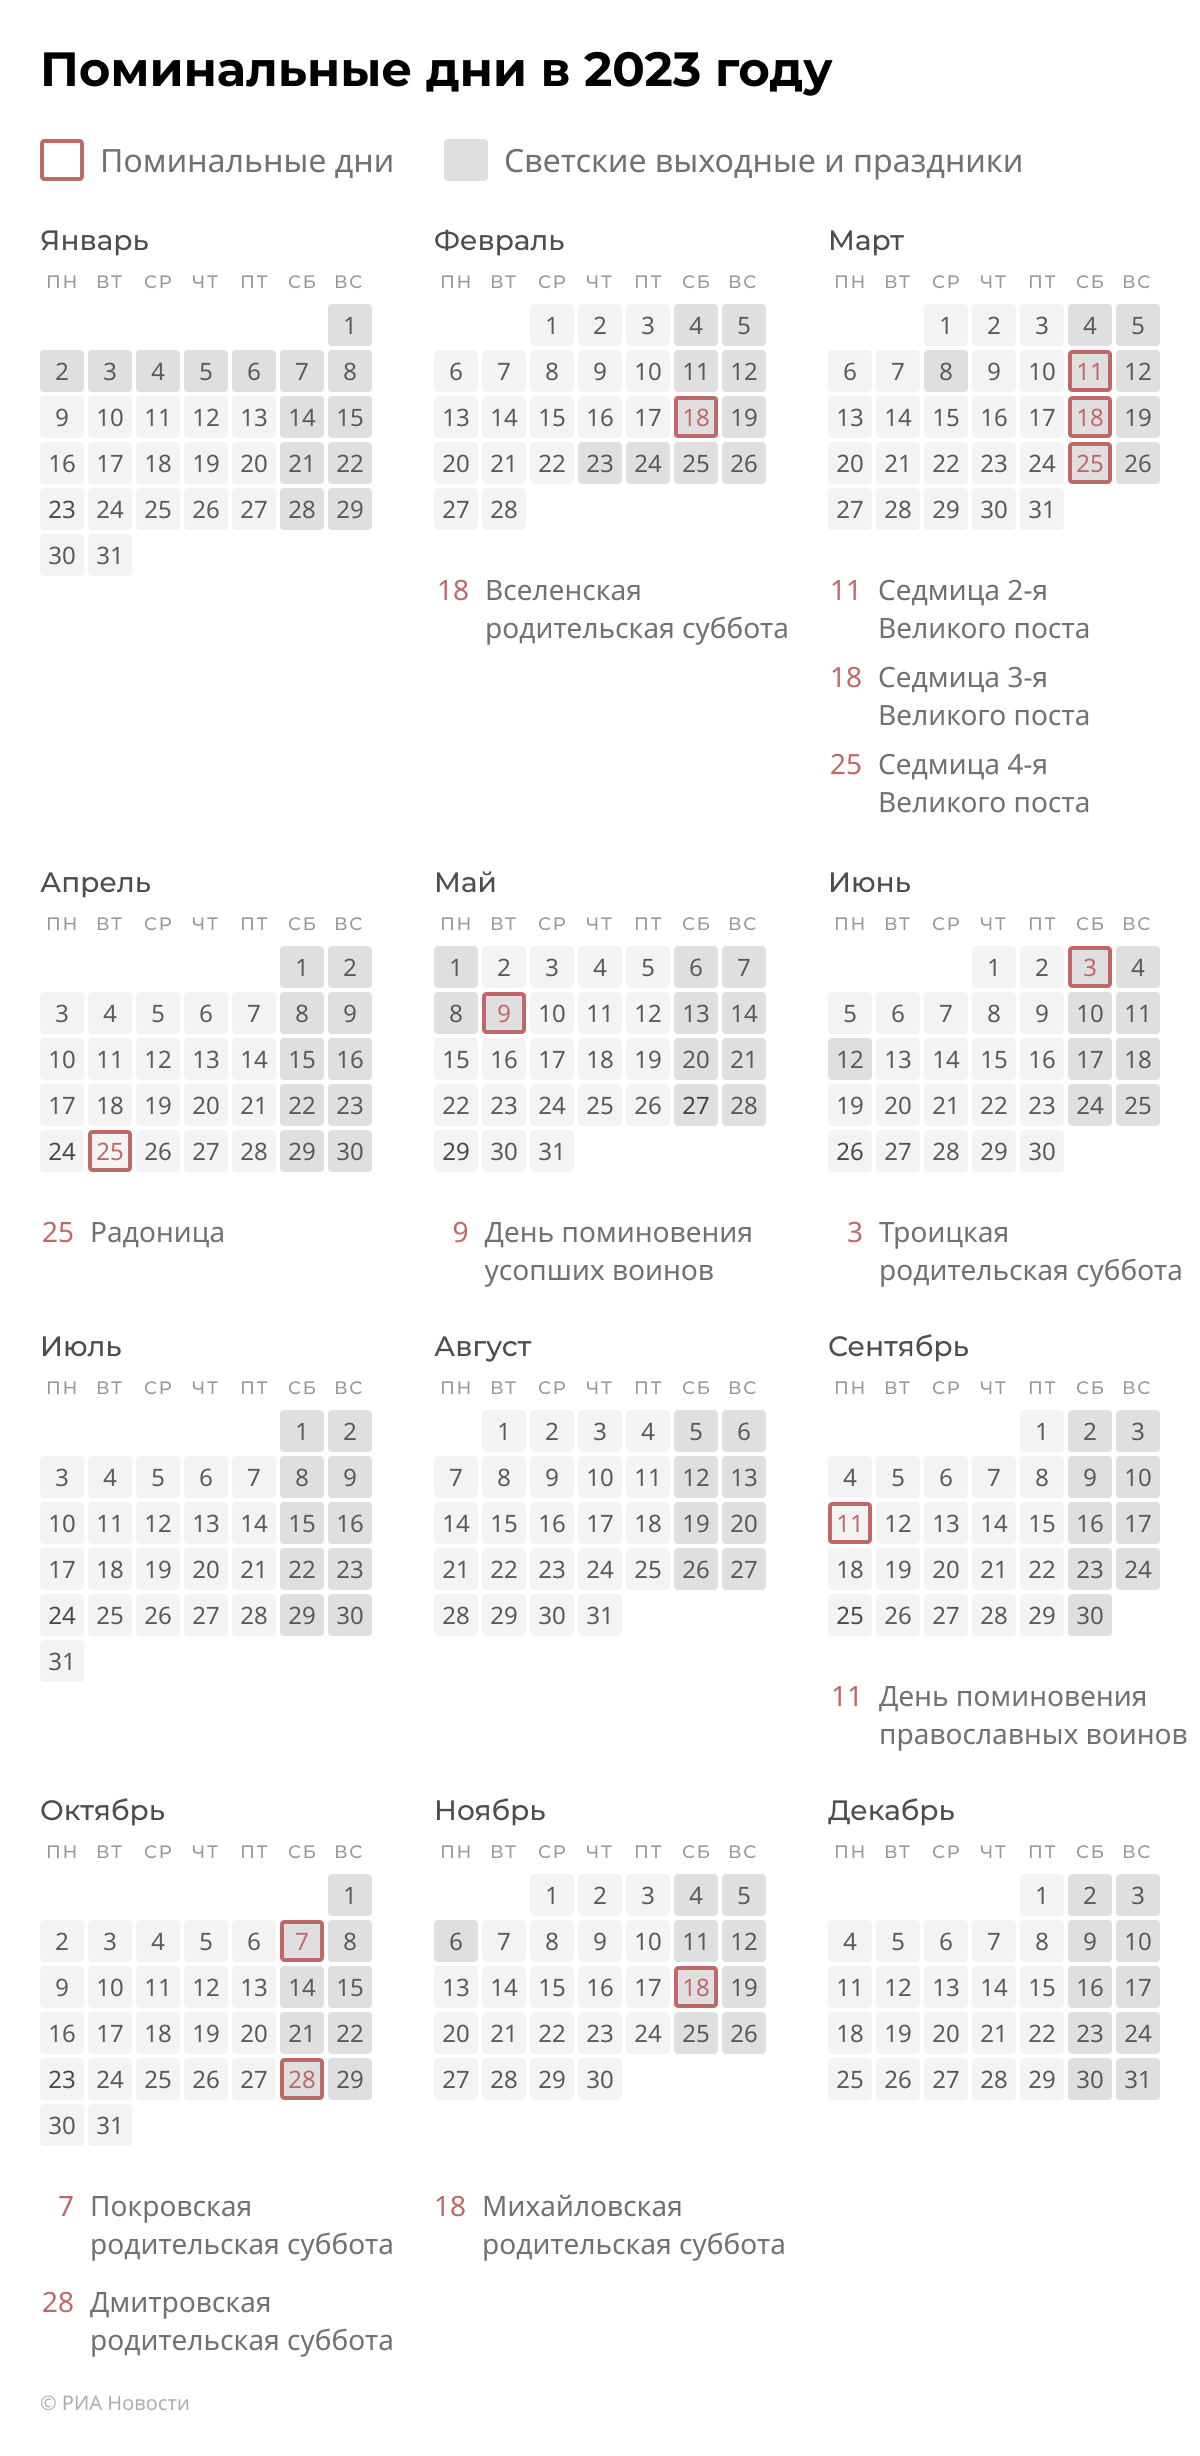 Поминальные дни в 2023 году православные. Календарь поминальных дней в 2023. Родительская суббота в 2023 календарь. Родительская суббота в июне 2023 года. В марте дни родительские субботы